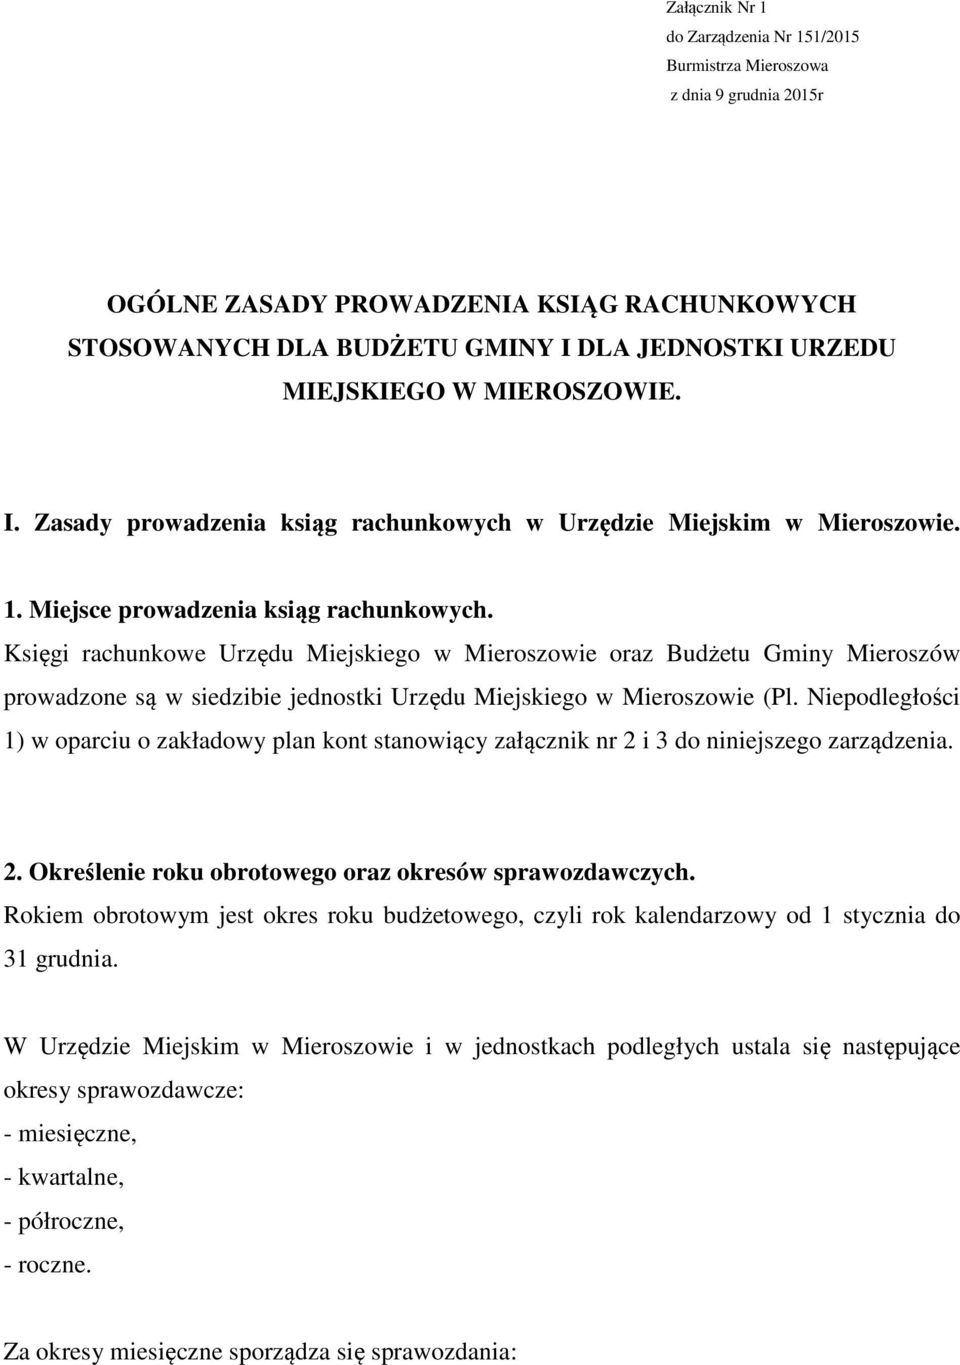 Księgi rachunkowe Urzędu Miejskiego w Mieroszowie oraz Budżetu Gminy Mieroszów prowadzone są w siedzibie jednostki Urzędu Miejskiego w Mieroszowie (Pl.